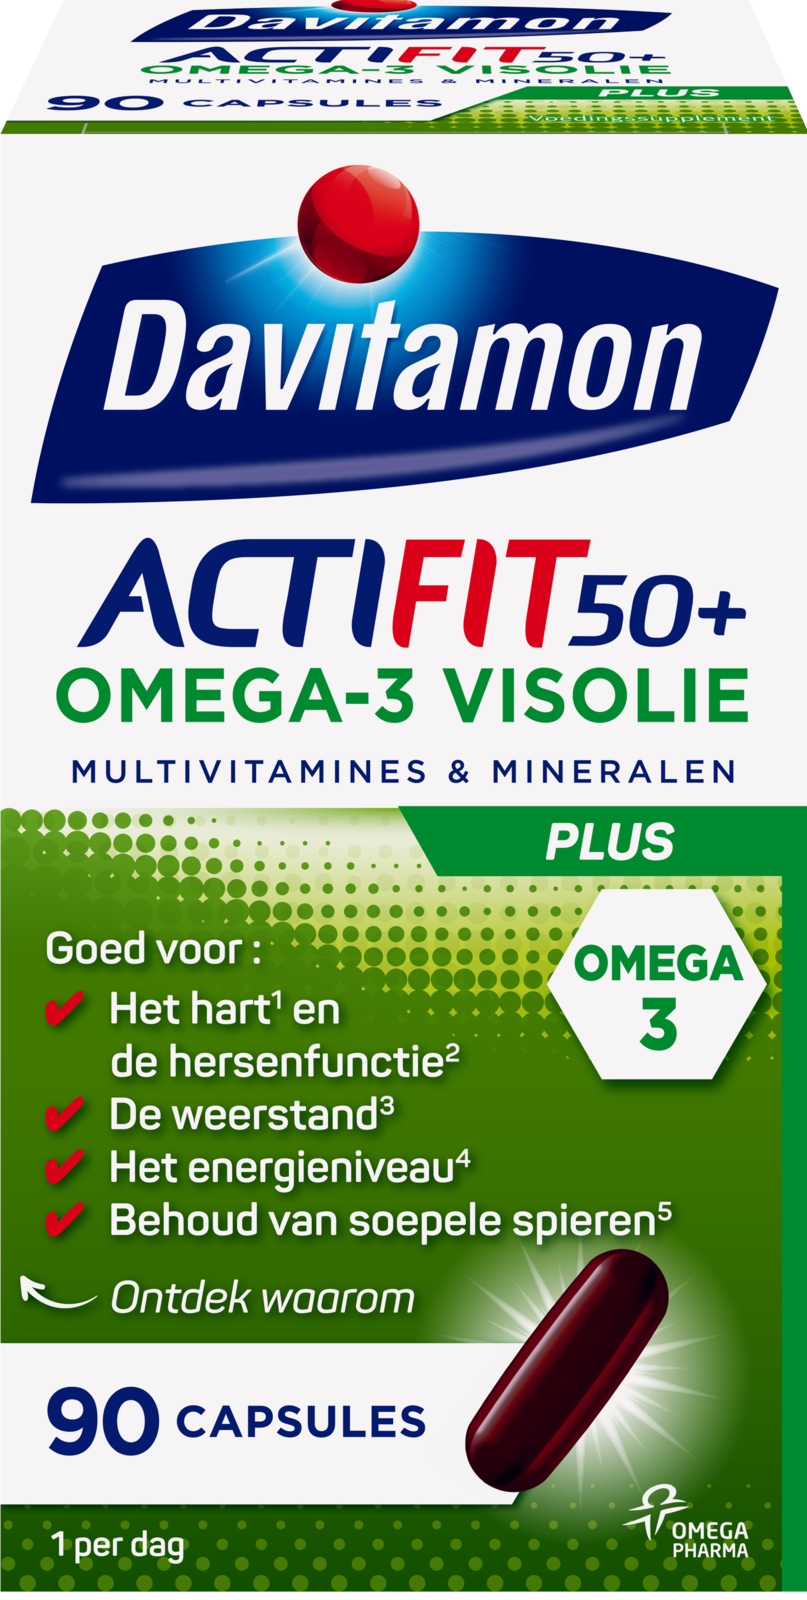 Afbeelding van Davitamon Actifit 50 Plus Omega-3 Visolie Capsules